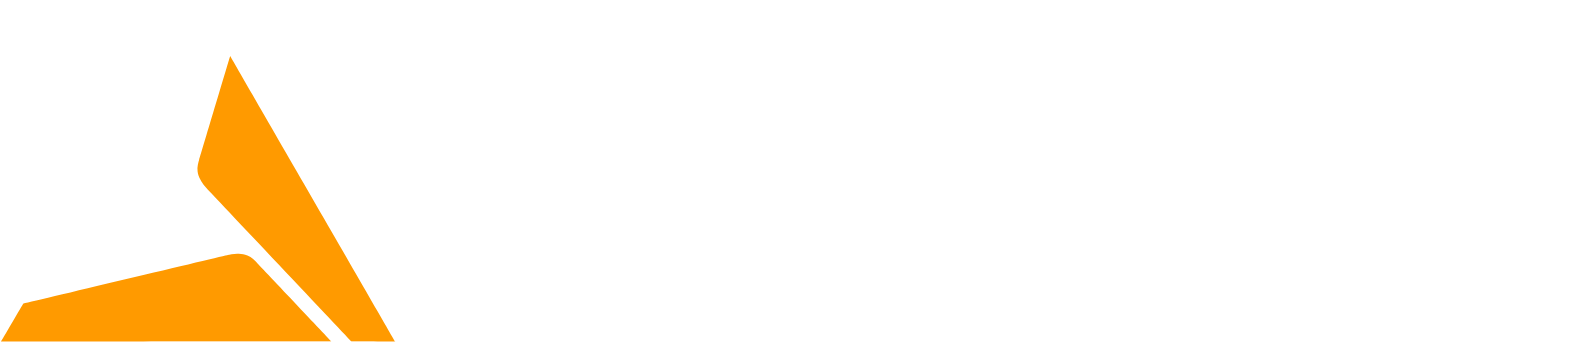 Polymetal logo grand pour les fonds sombres (PNG transparent)